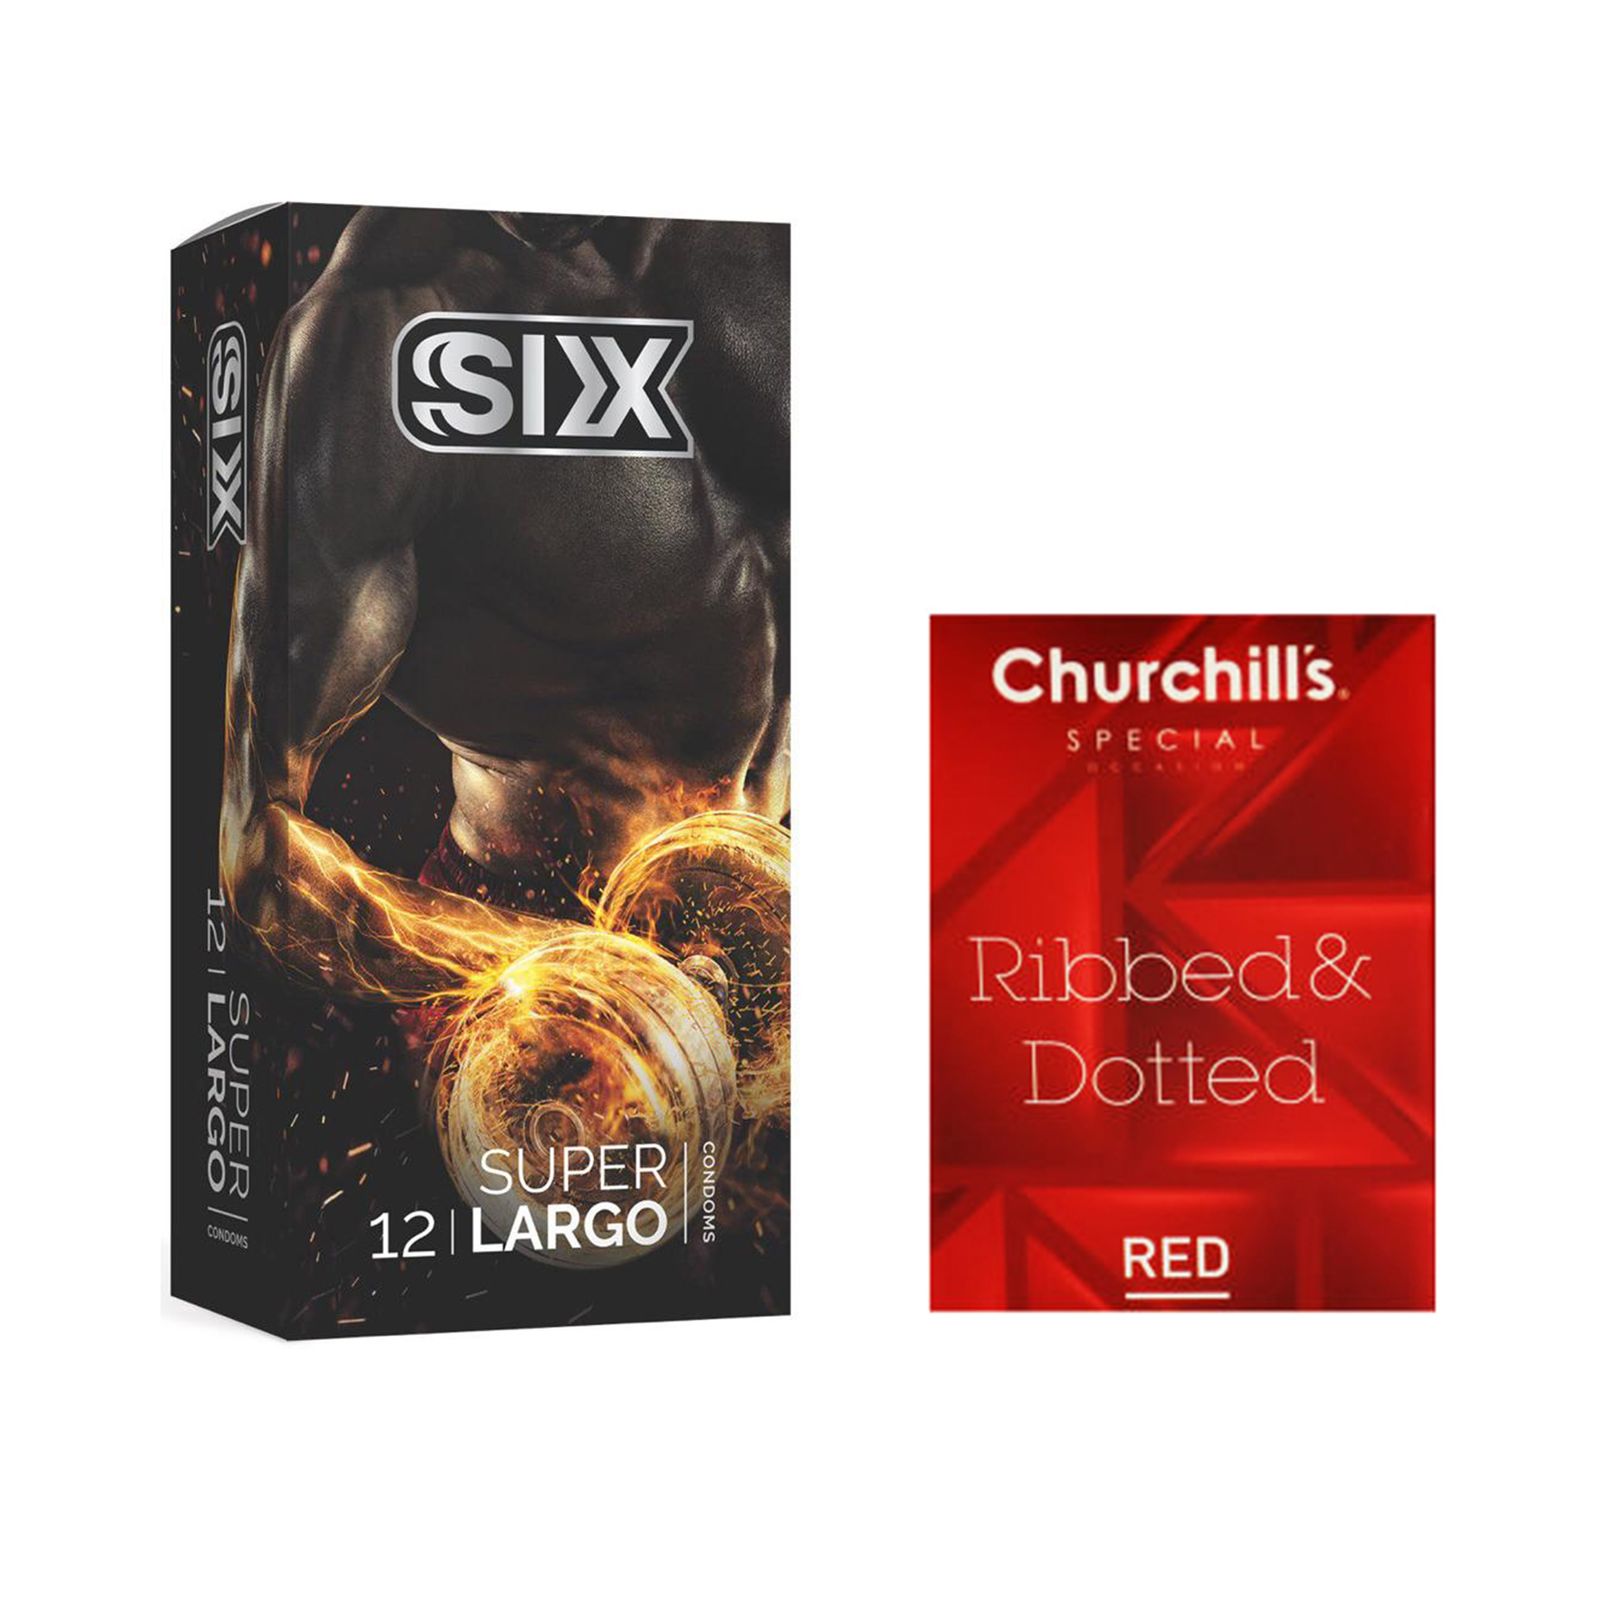 کاندوم سیکس مدل Super Largo بسته 12 عددی به همراه کاندوم چرچیلز مدل Hot Gel بسته 3 عددی -  - 1